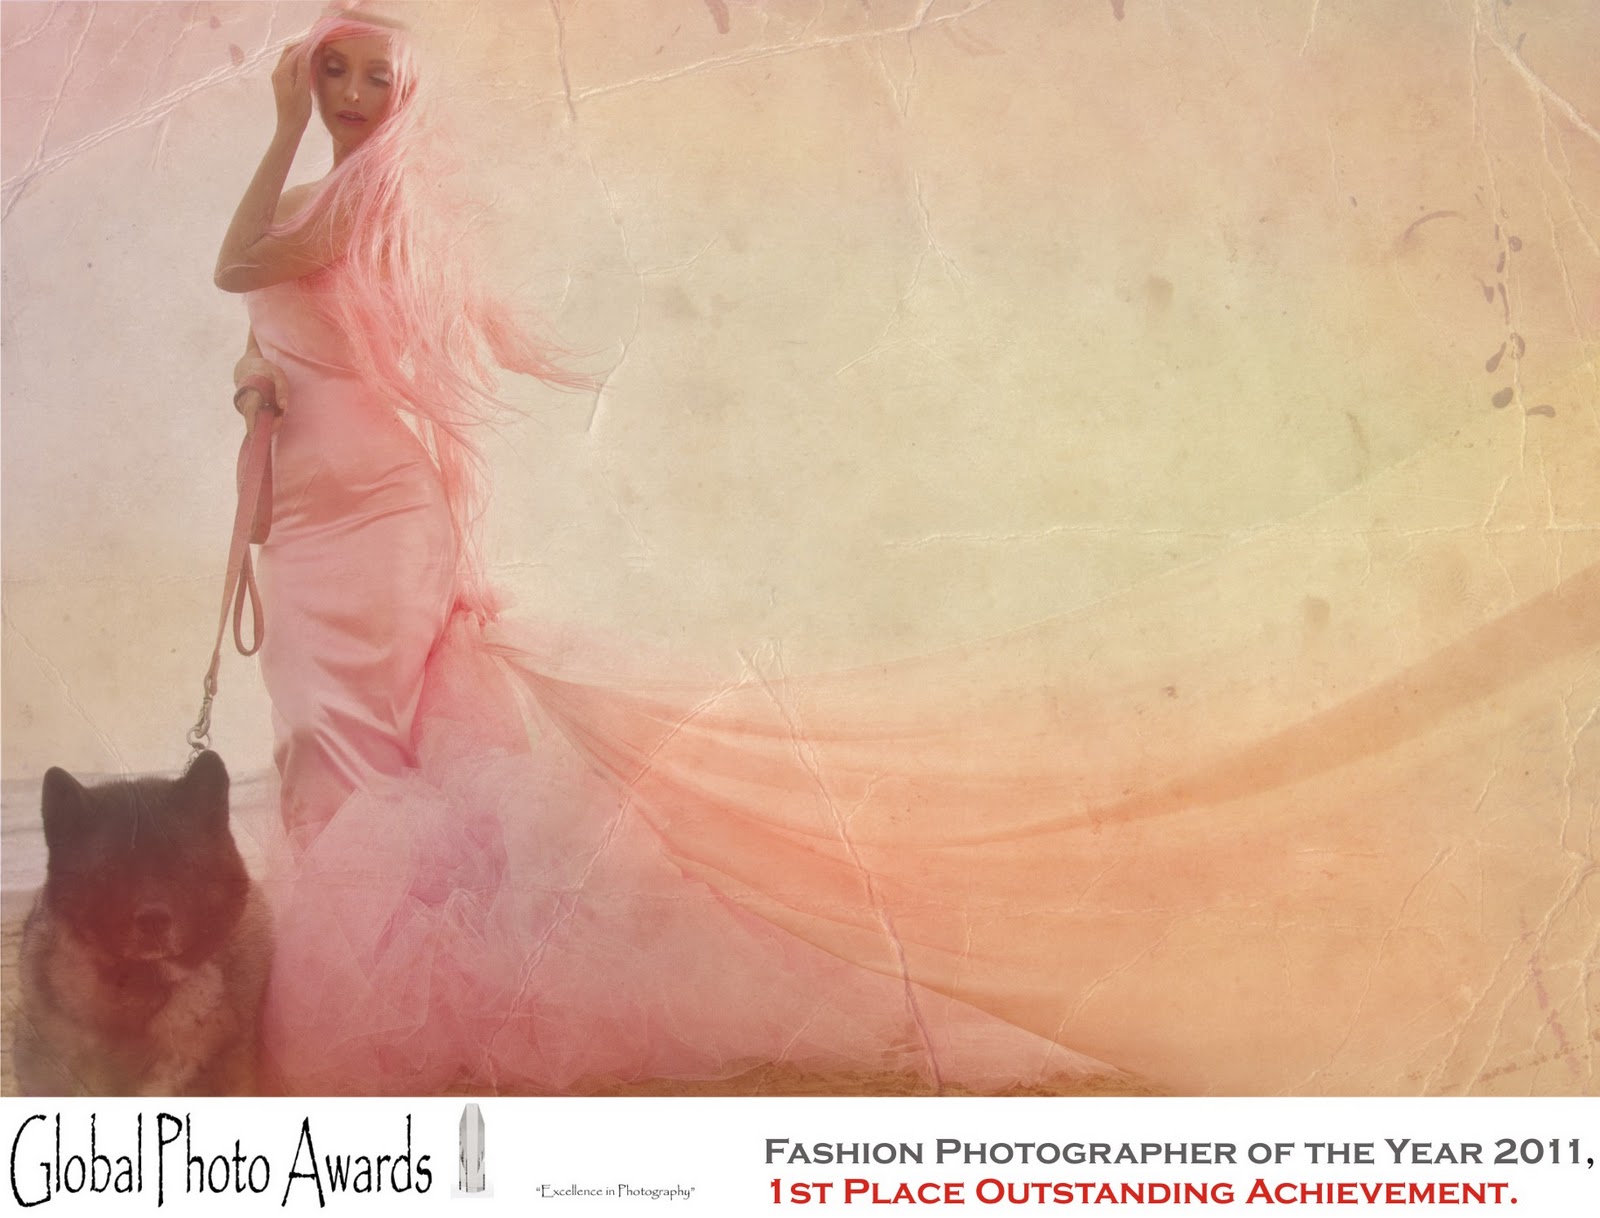 http://4.bp.blogspot.com/-4NLWyU78kIU/TwiunLFDjgI/AAAAAAAABDc/NfatNwHzZJs/s1600/fashion+photographer+of+the+year+global+photo+awards.jpg